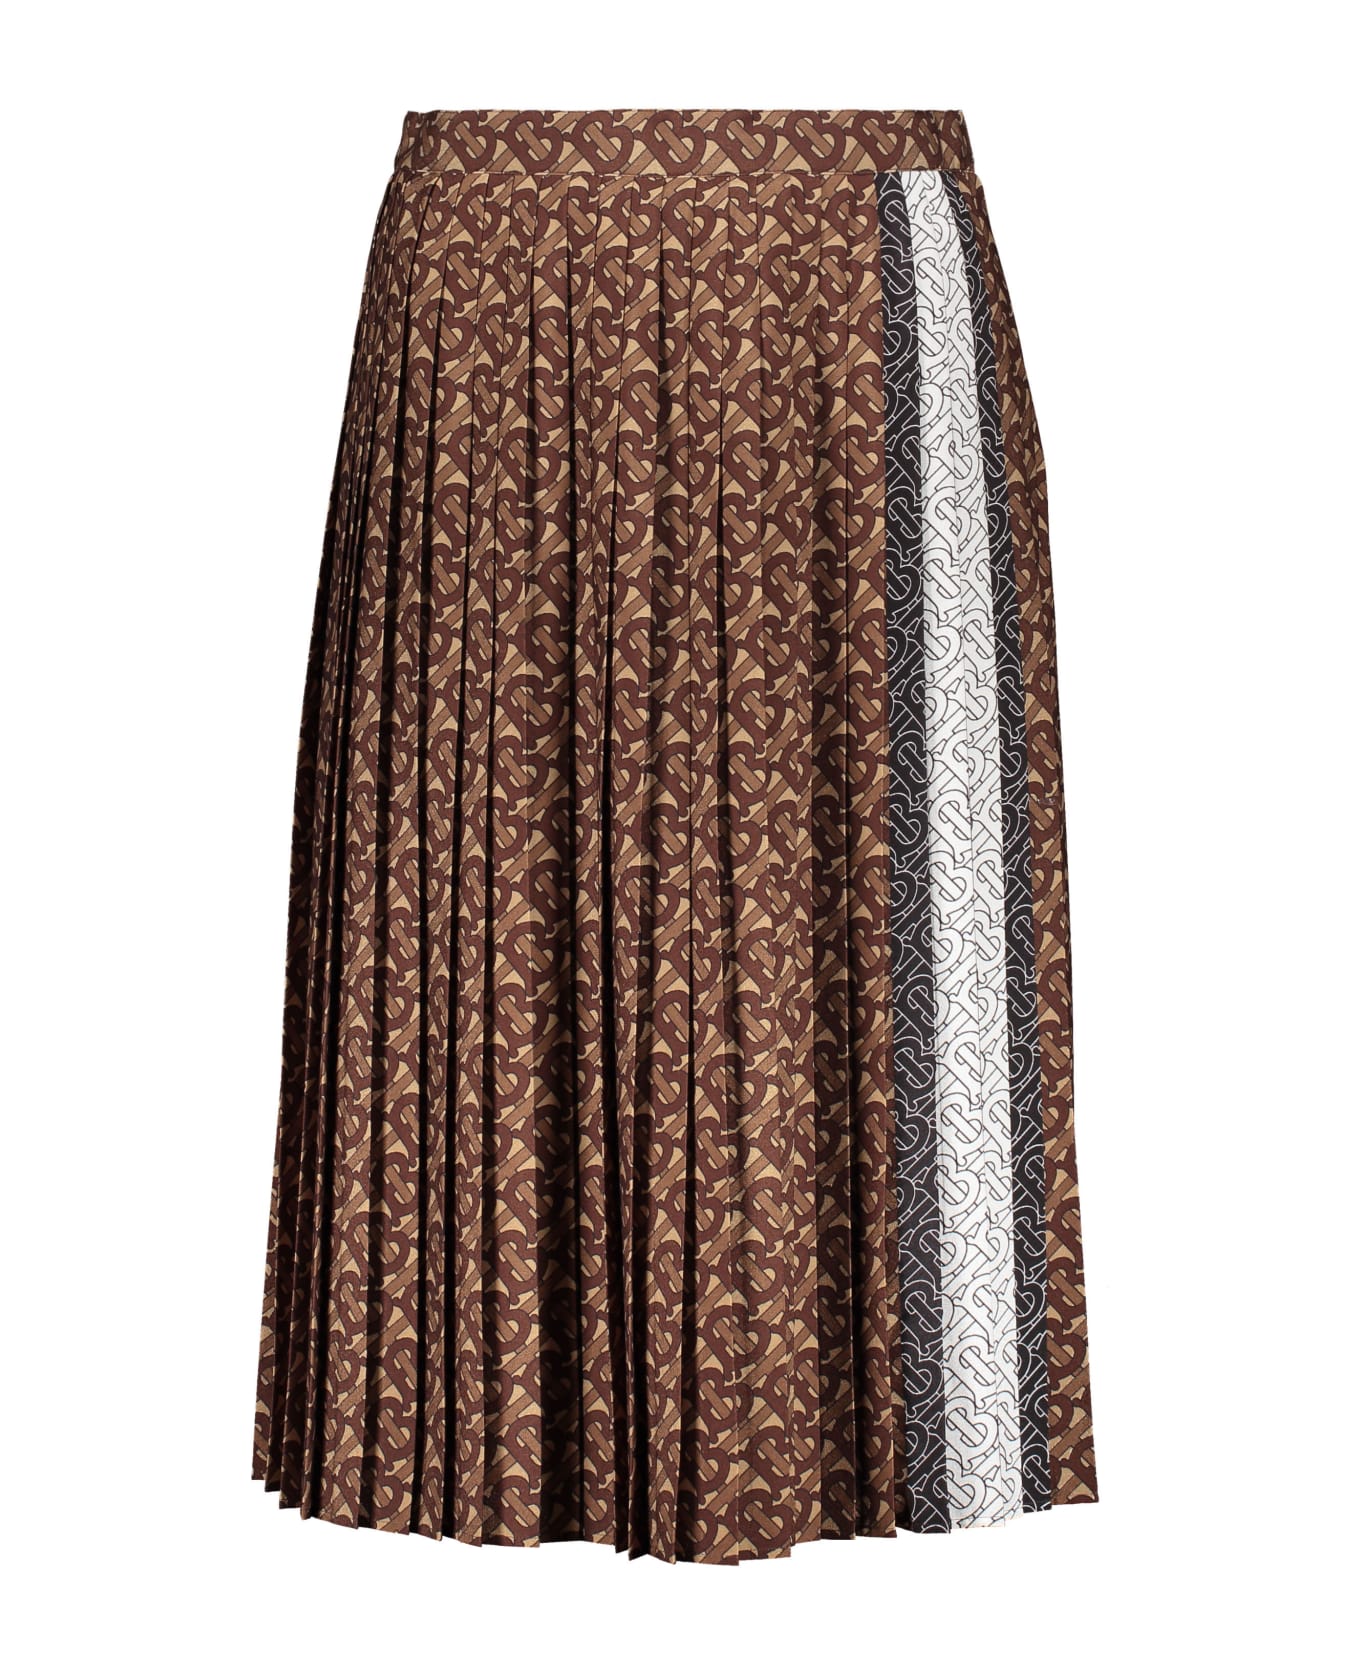 Burberry Printed Midi Skirt - brown